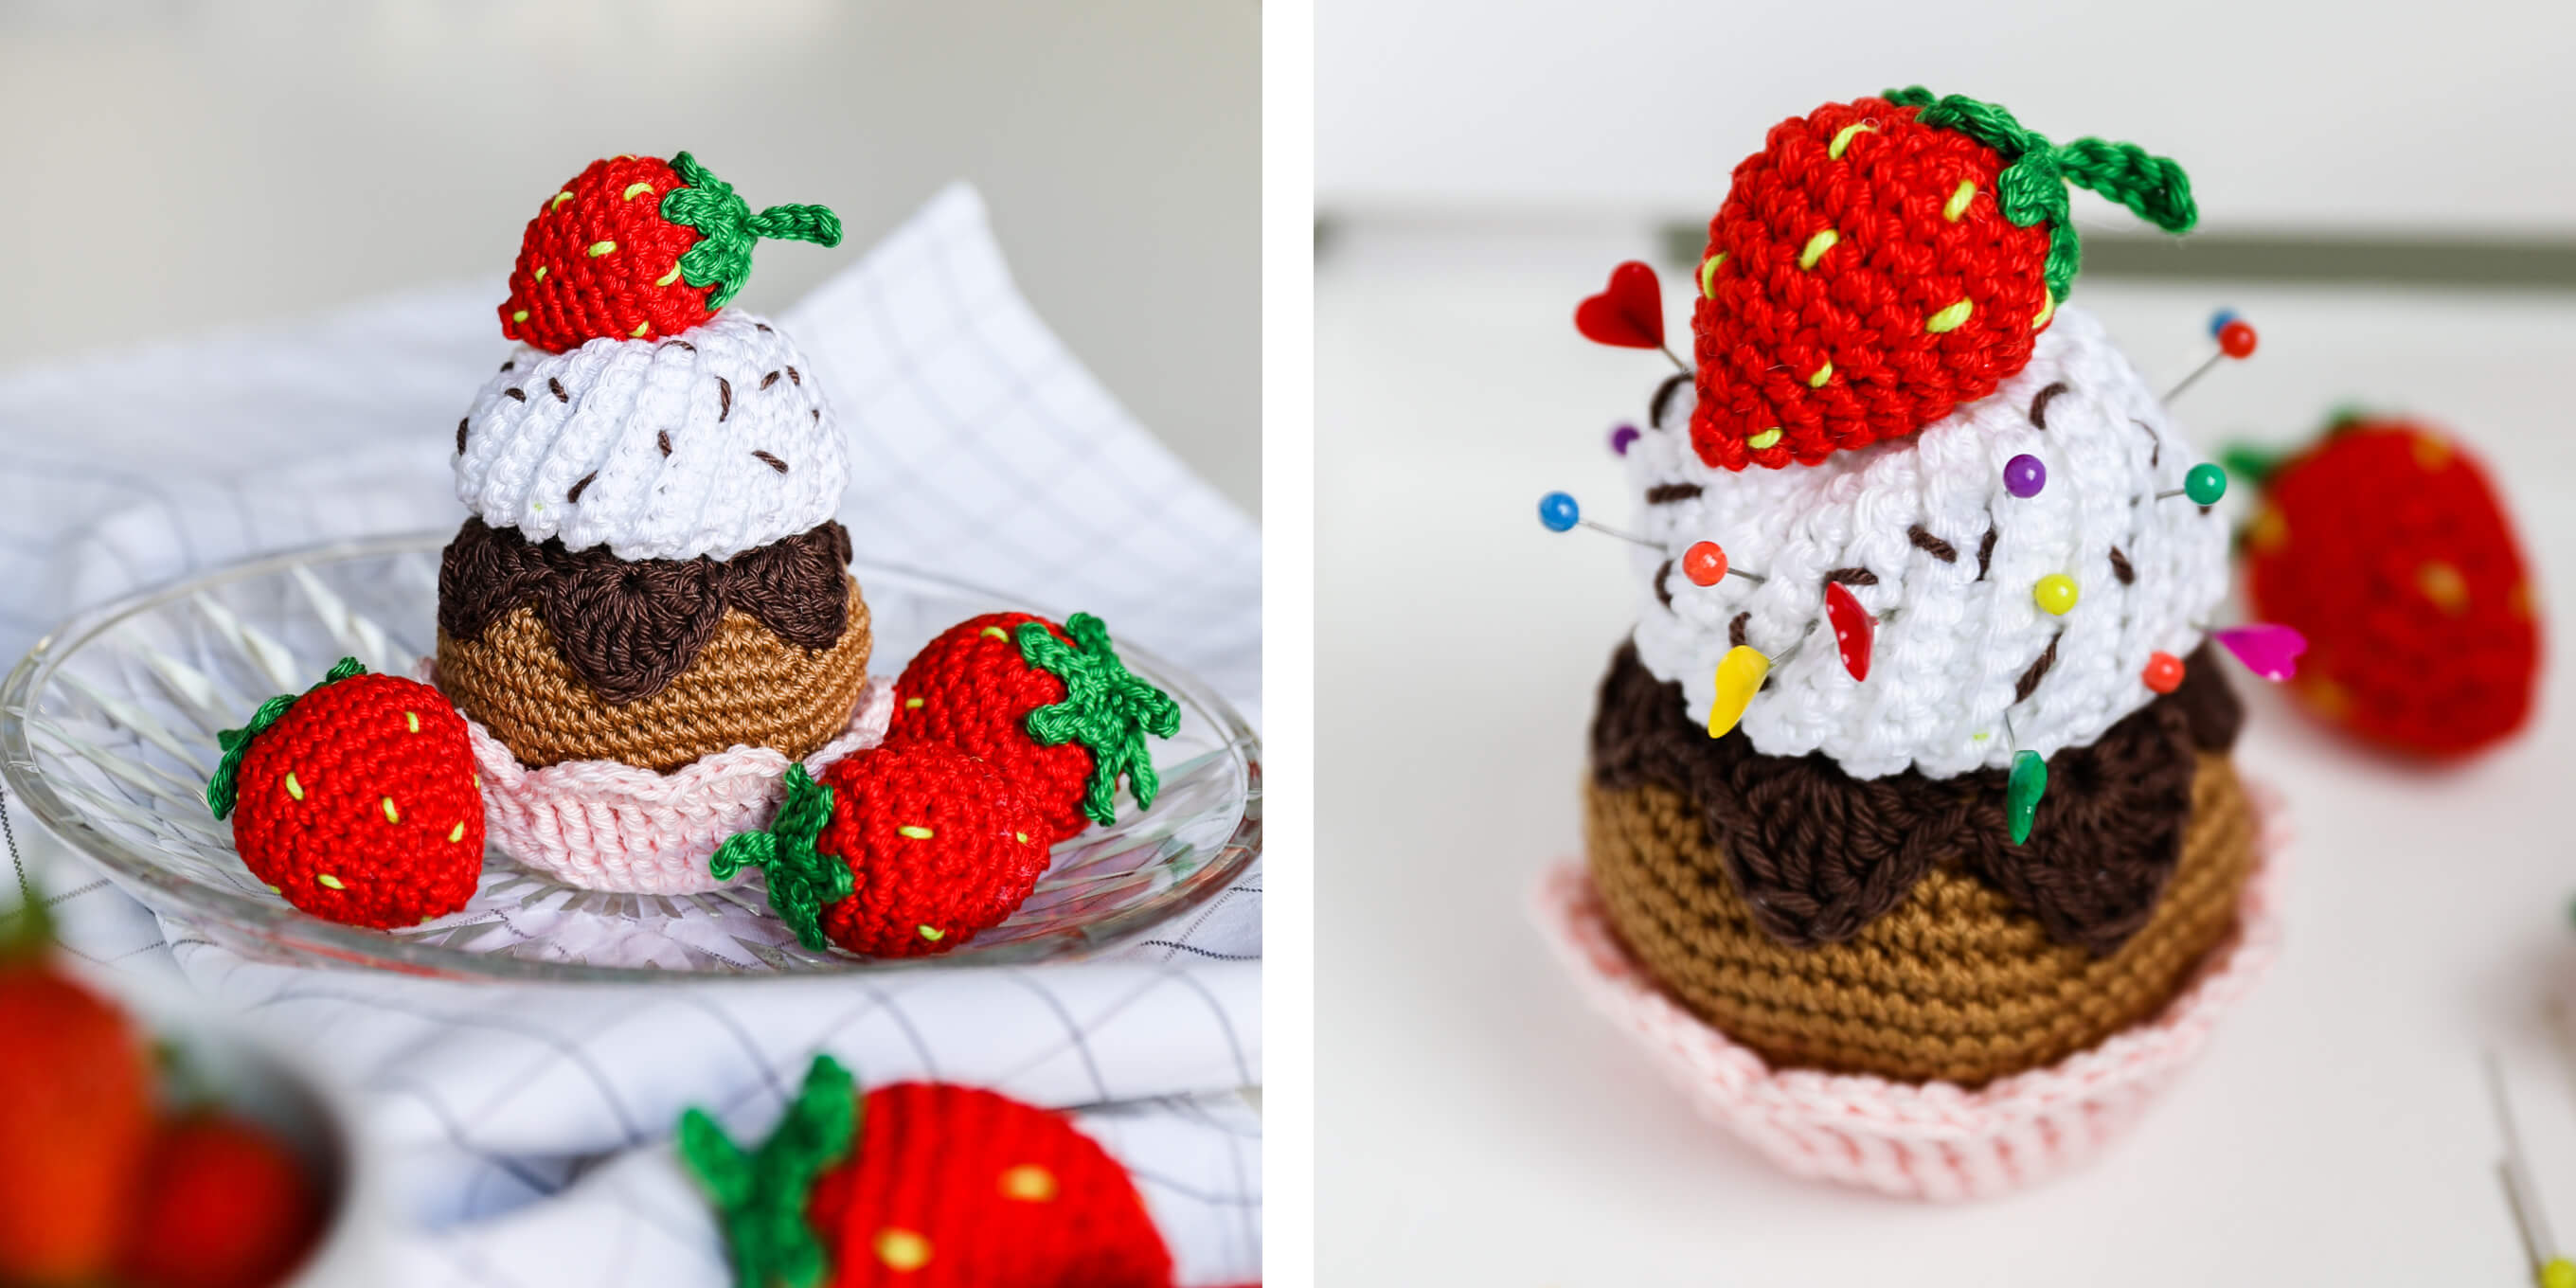 dekorative gehäkelter Cupcake mit Erdbeeren